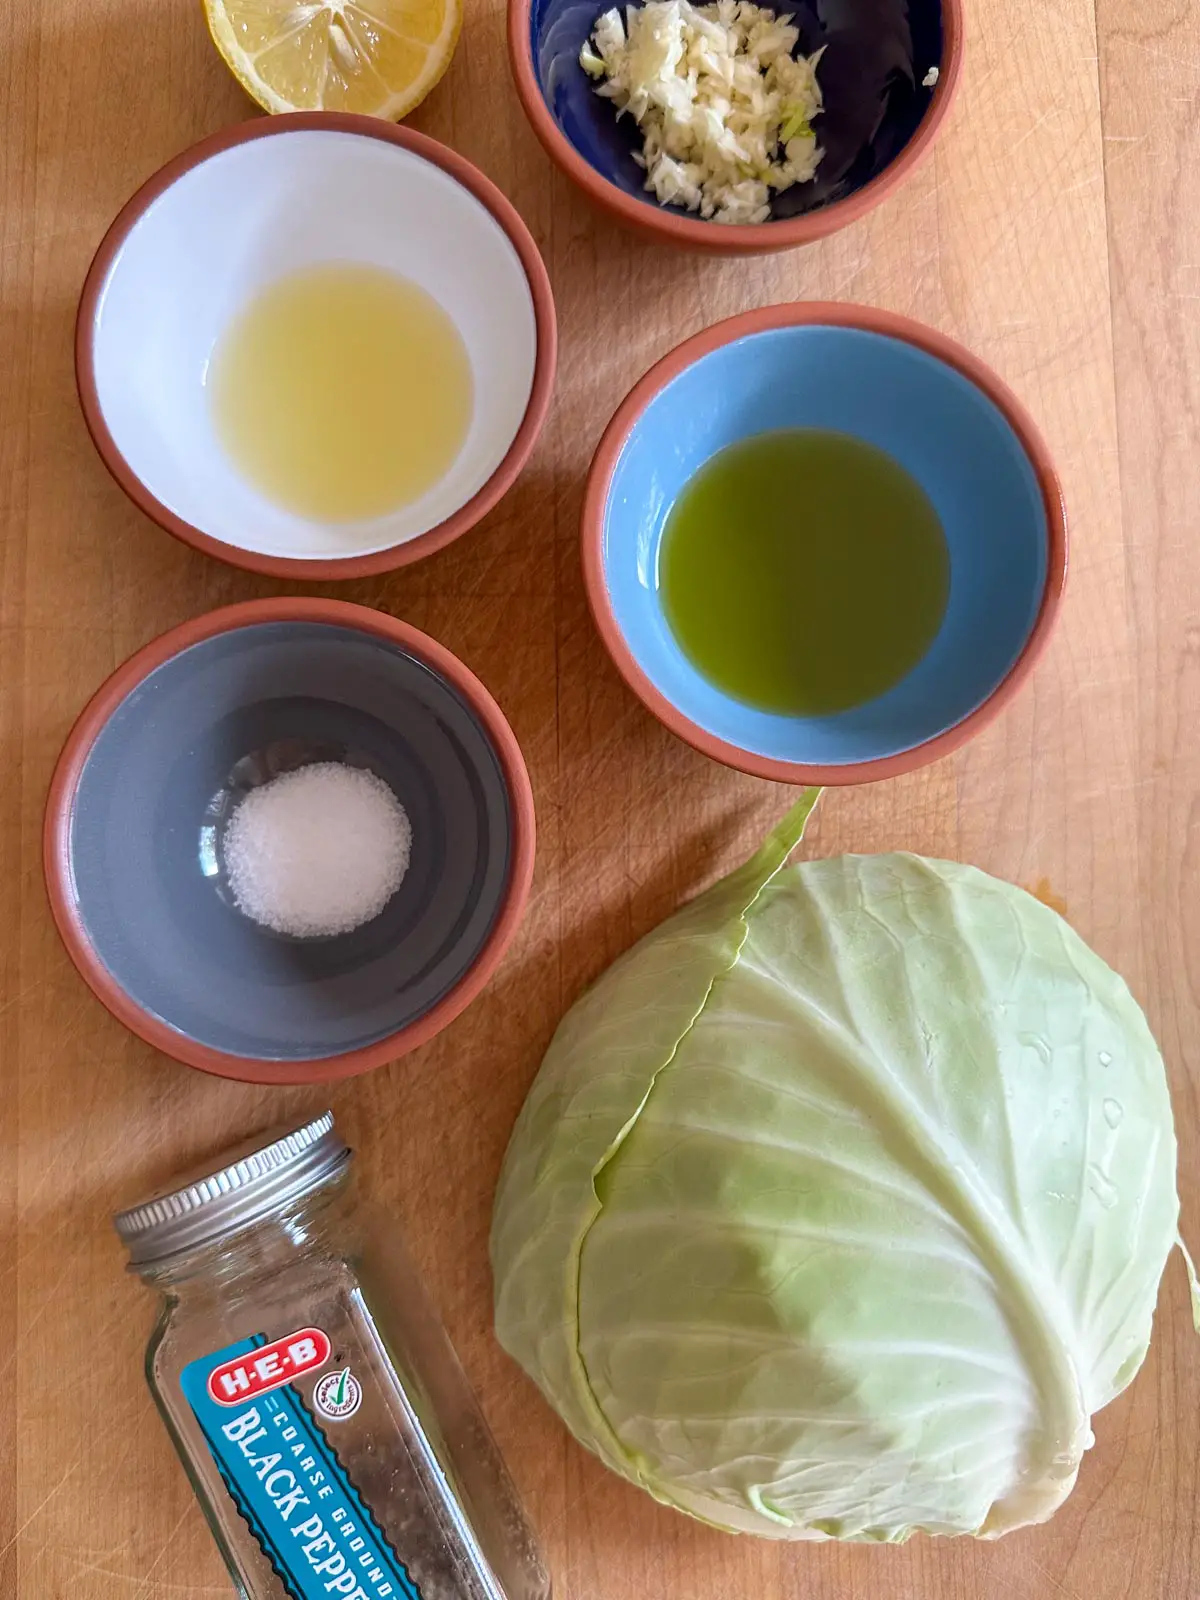 Green cabbage, jar labeled black pepper, bowls filled with salt, olive oil, lemon juice and garlic, and half a lemon.